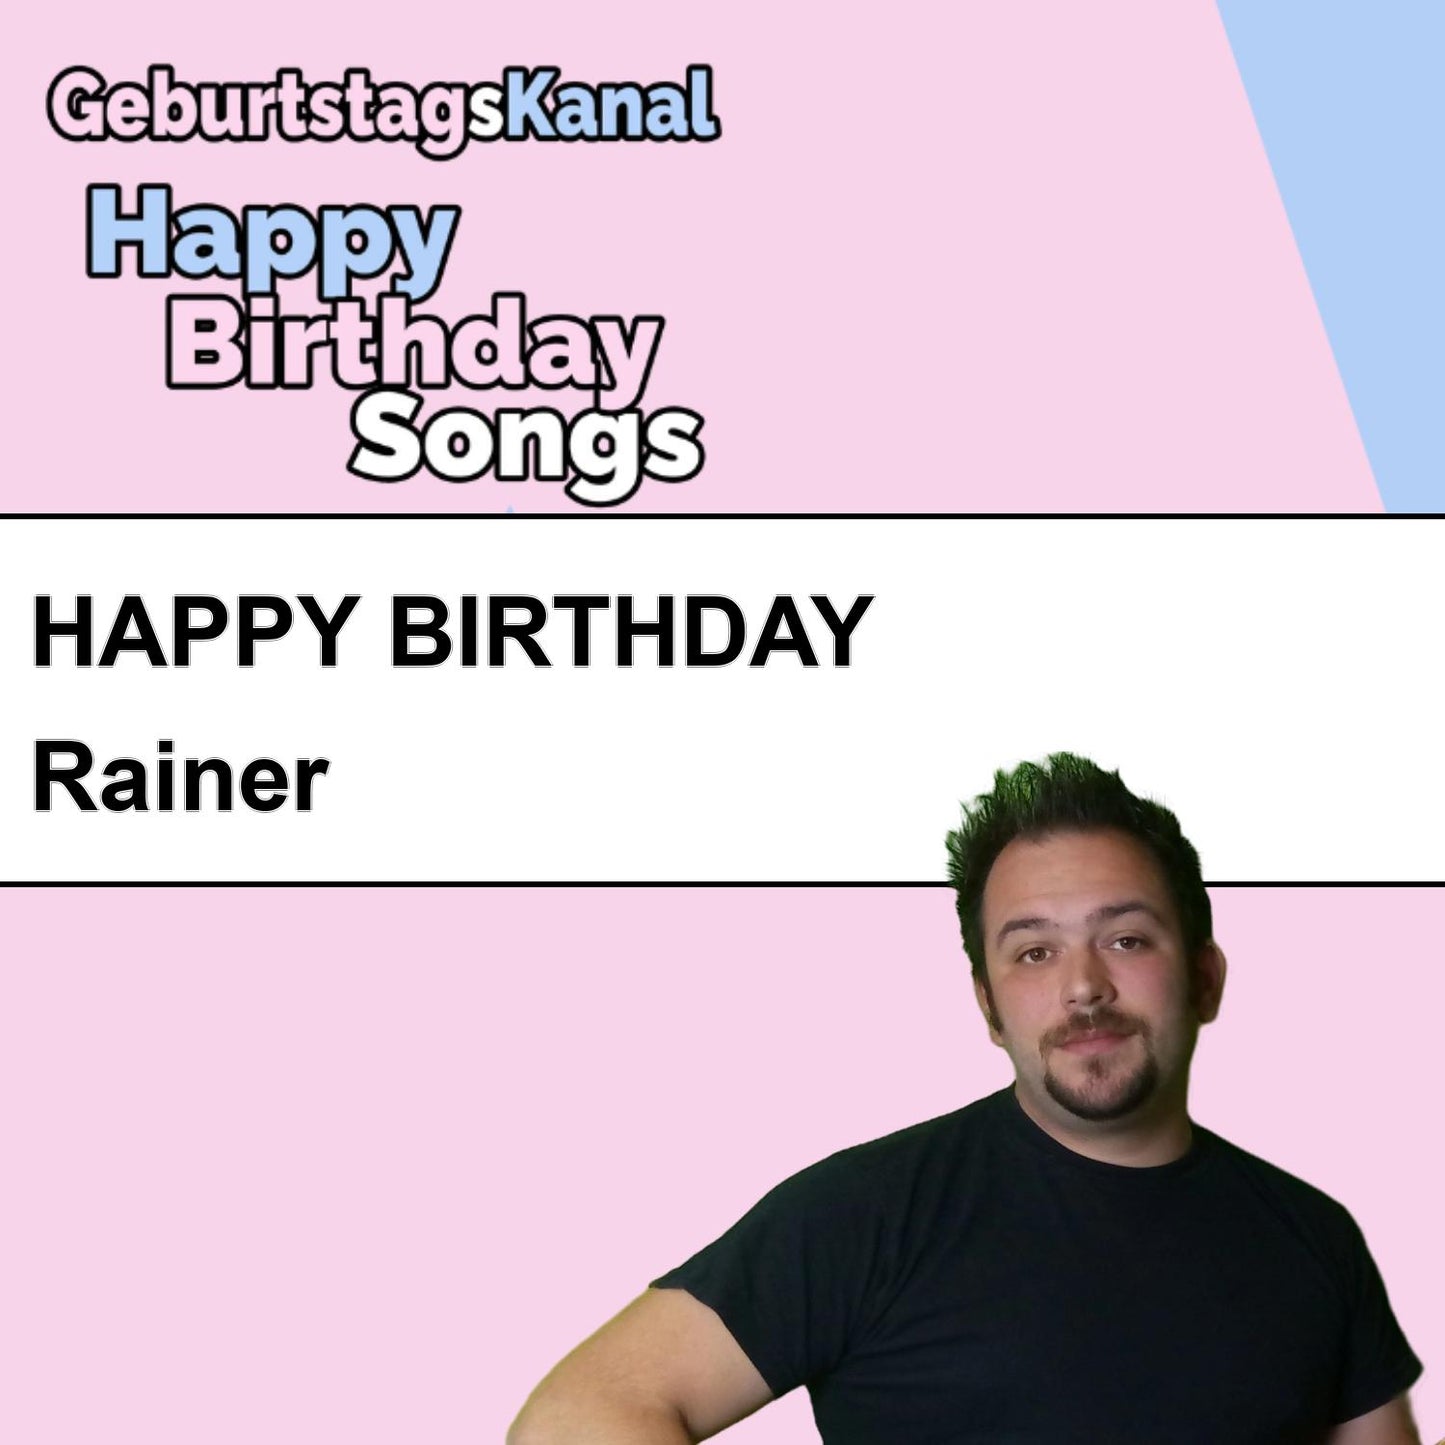 Produktbild Happy Birthday to you Rainer mit Wunschgrußbotschaft